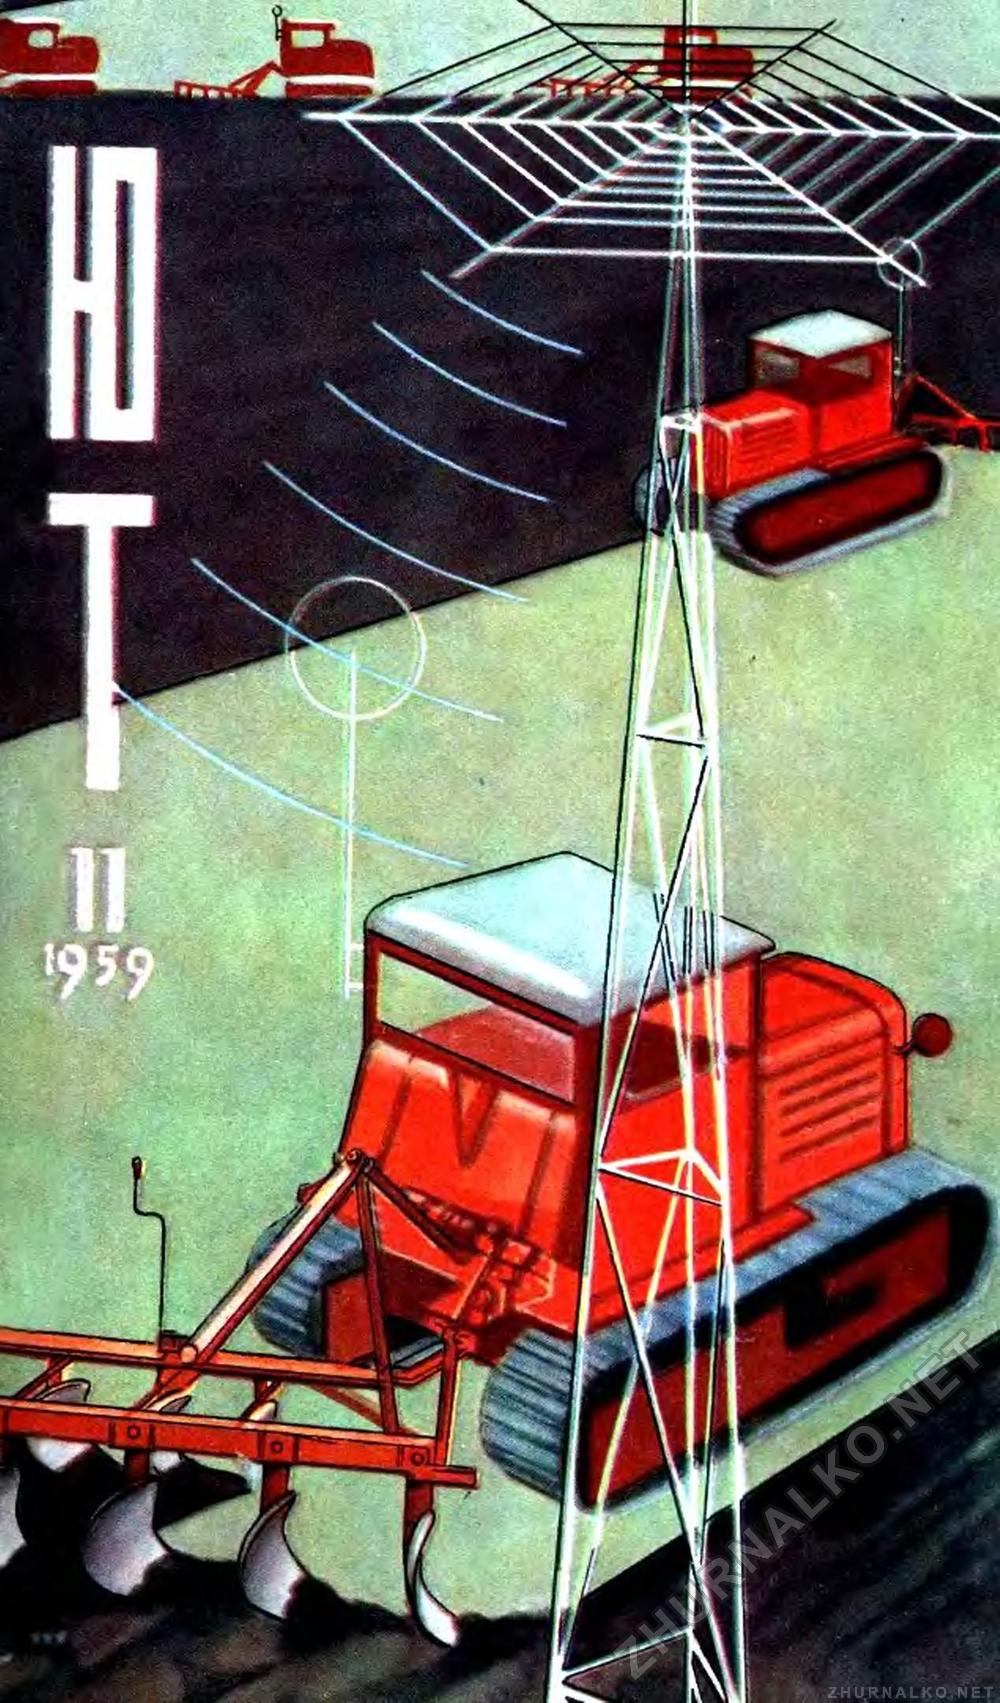   1959-11,  1